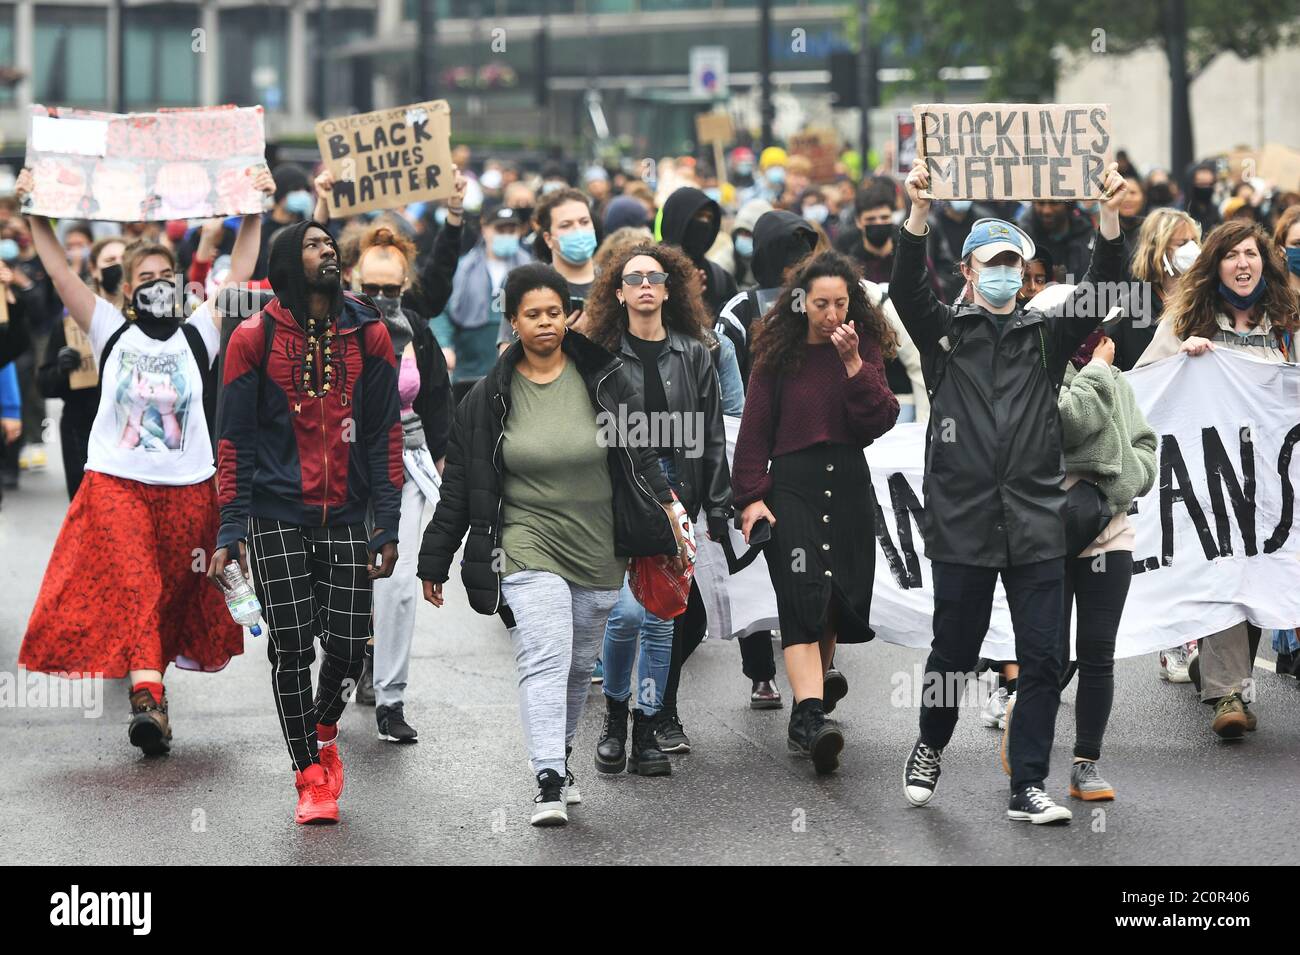 Les gens participent à une marche de protestation Black Lives Matter à Park Lane, Londres. Banque D'Images